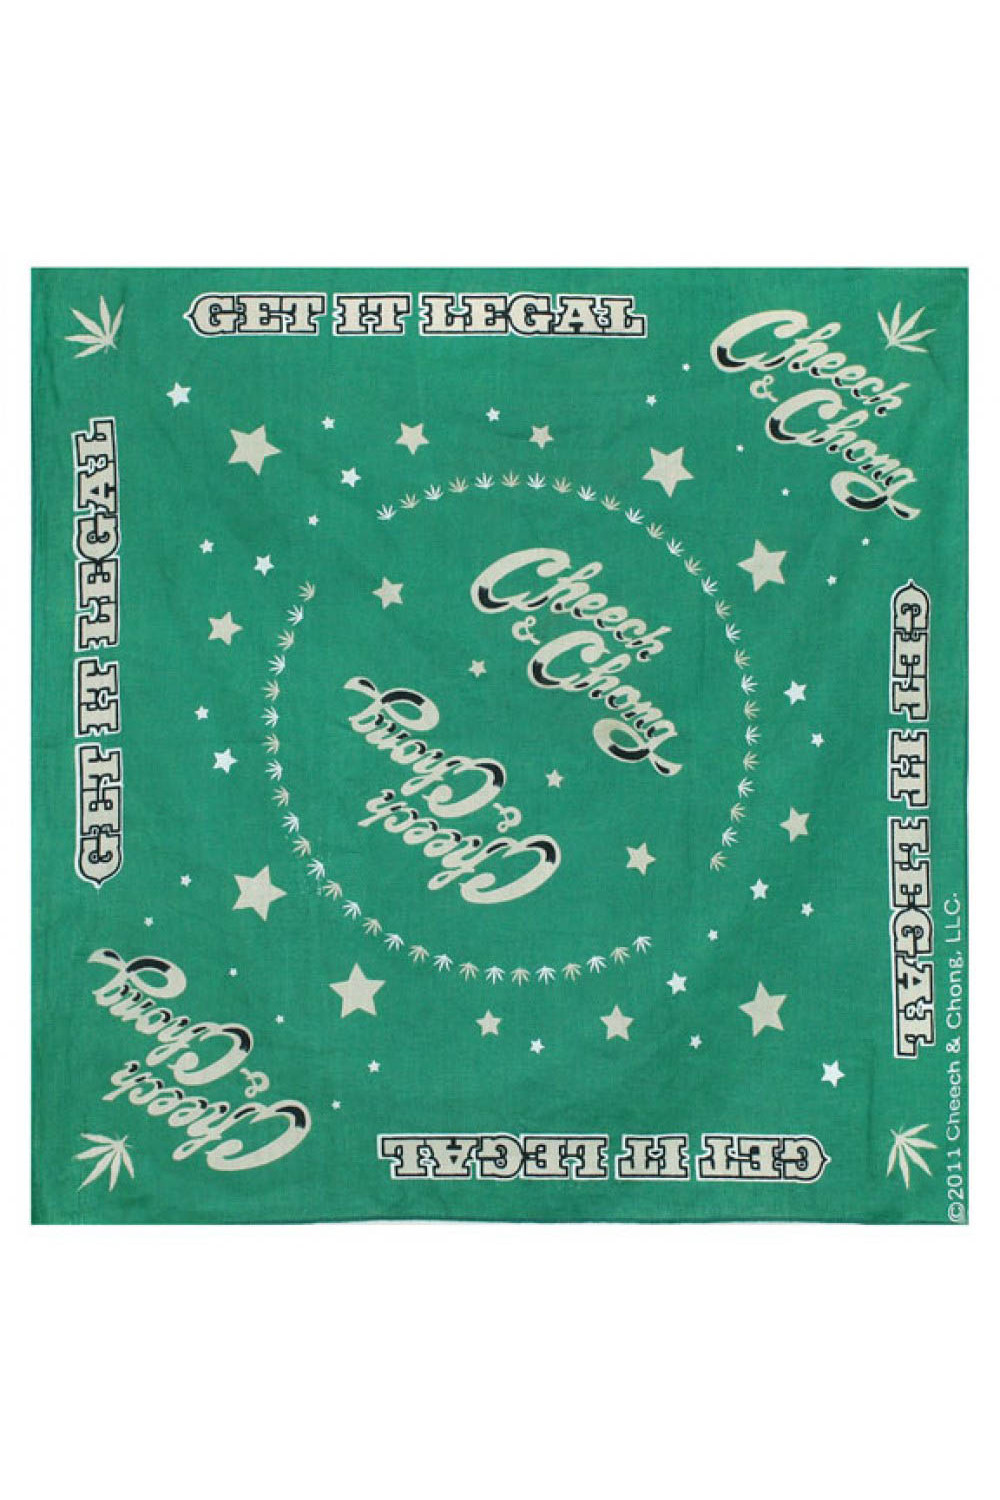 Cheech & Chong Get It Legal Bandana Green 22x22